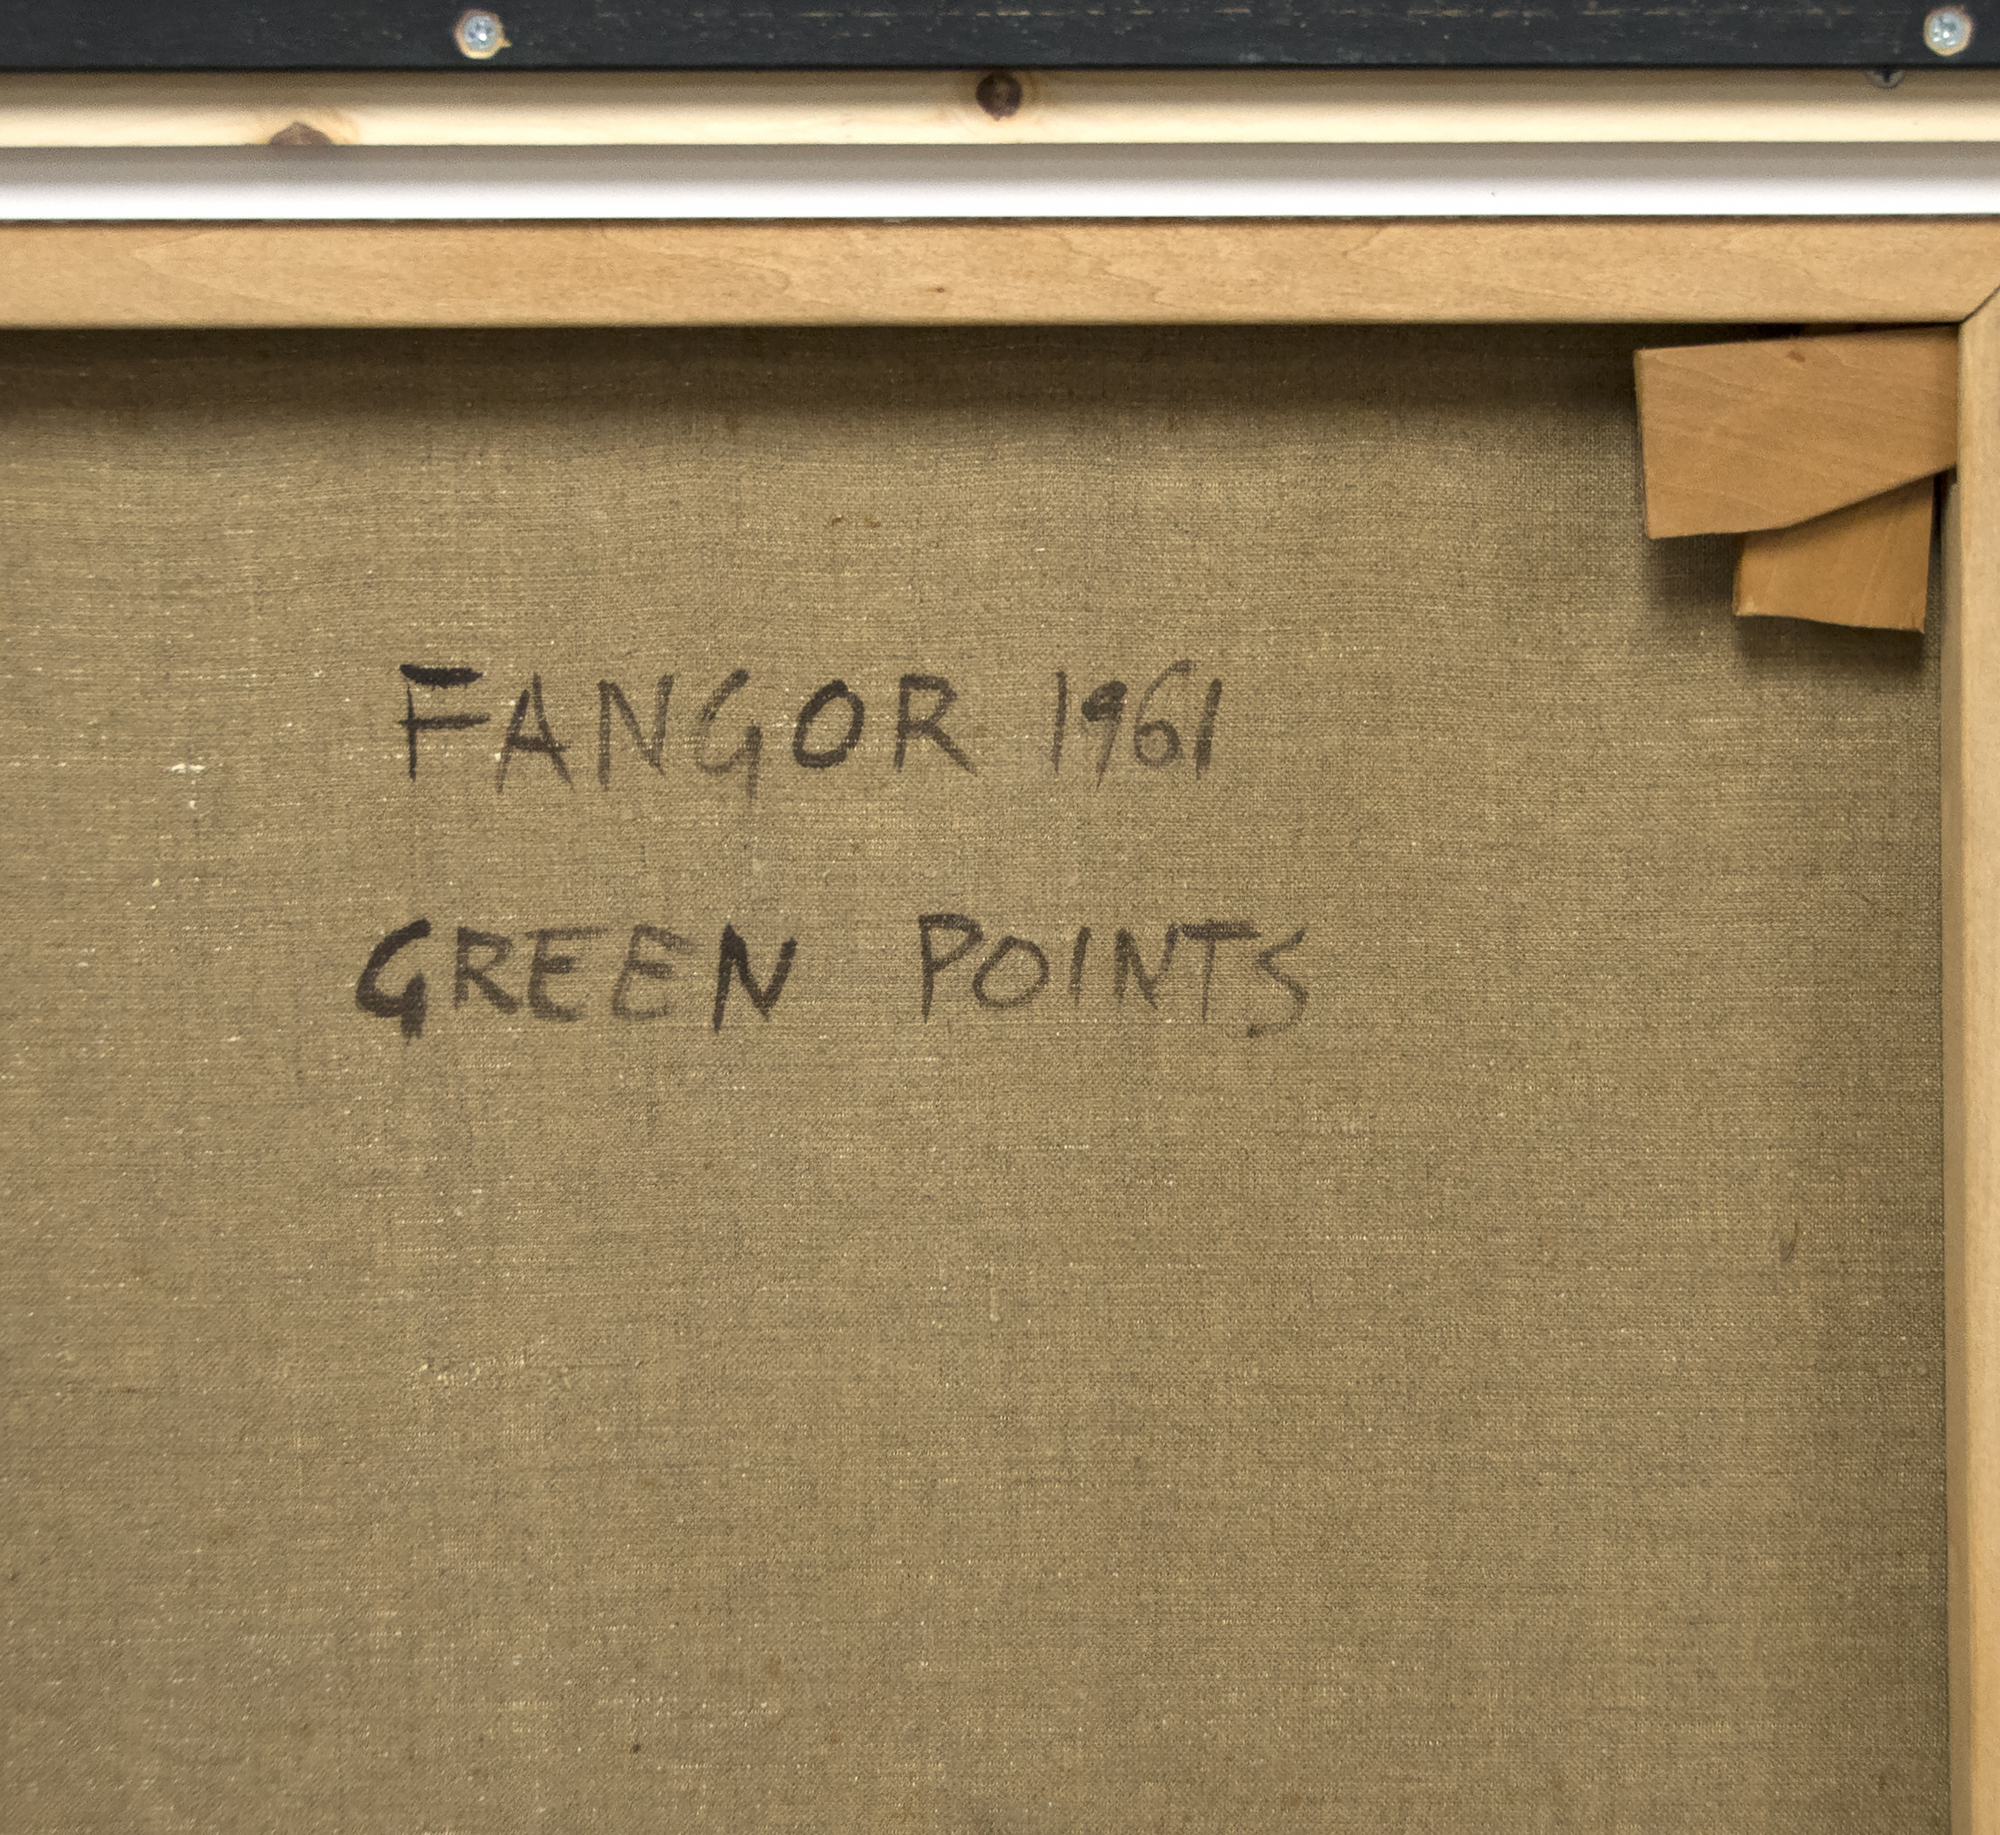 فوسيتيك فانغور-النقاط الخضراء-النفط علي قماش-52 7/8 × 33 1/2 في.